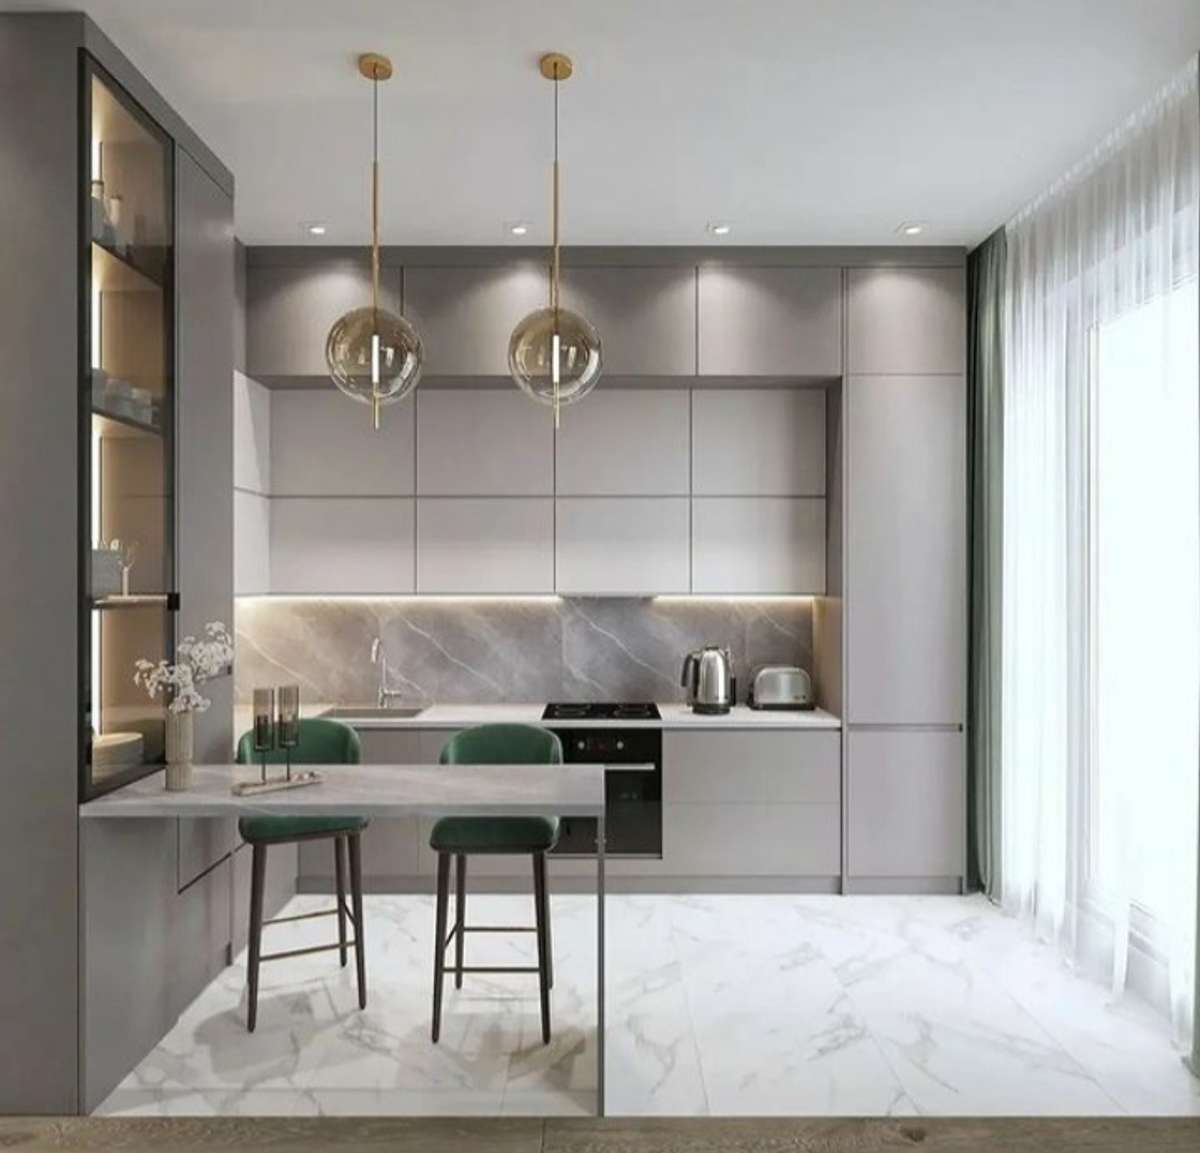 Kitchen, Lighting, Storage Designs by Service Provider Dizajnox -Design Dreams™, Indore | Kolo